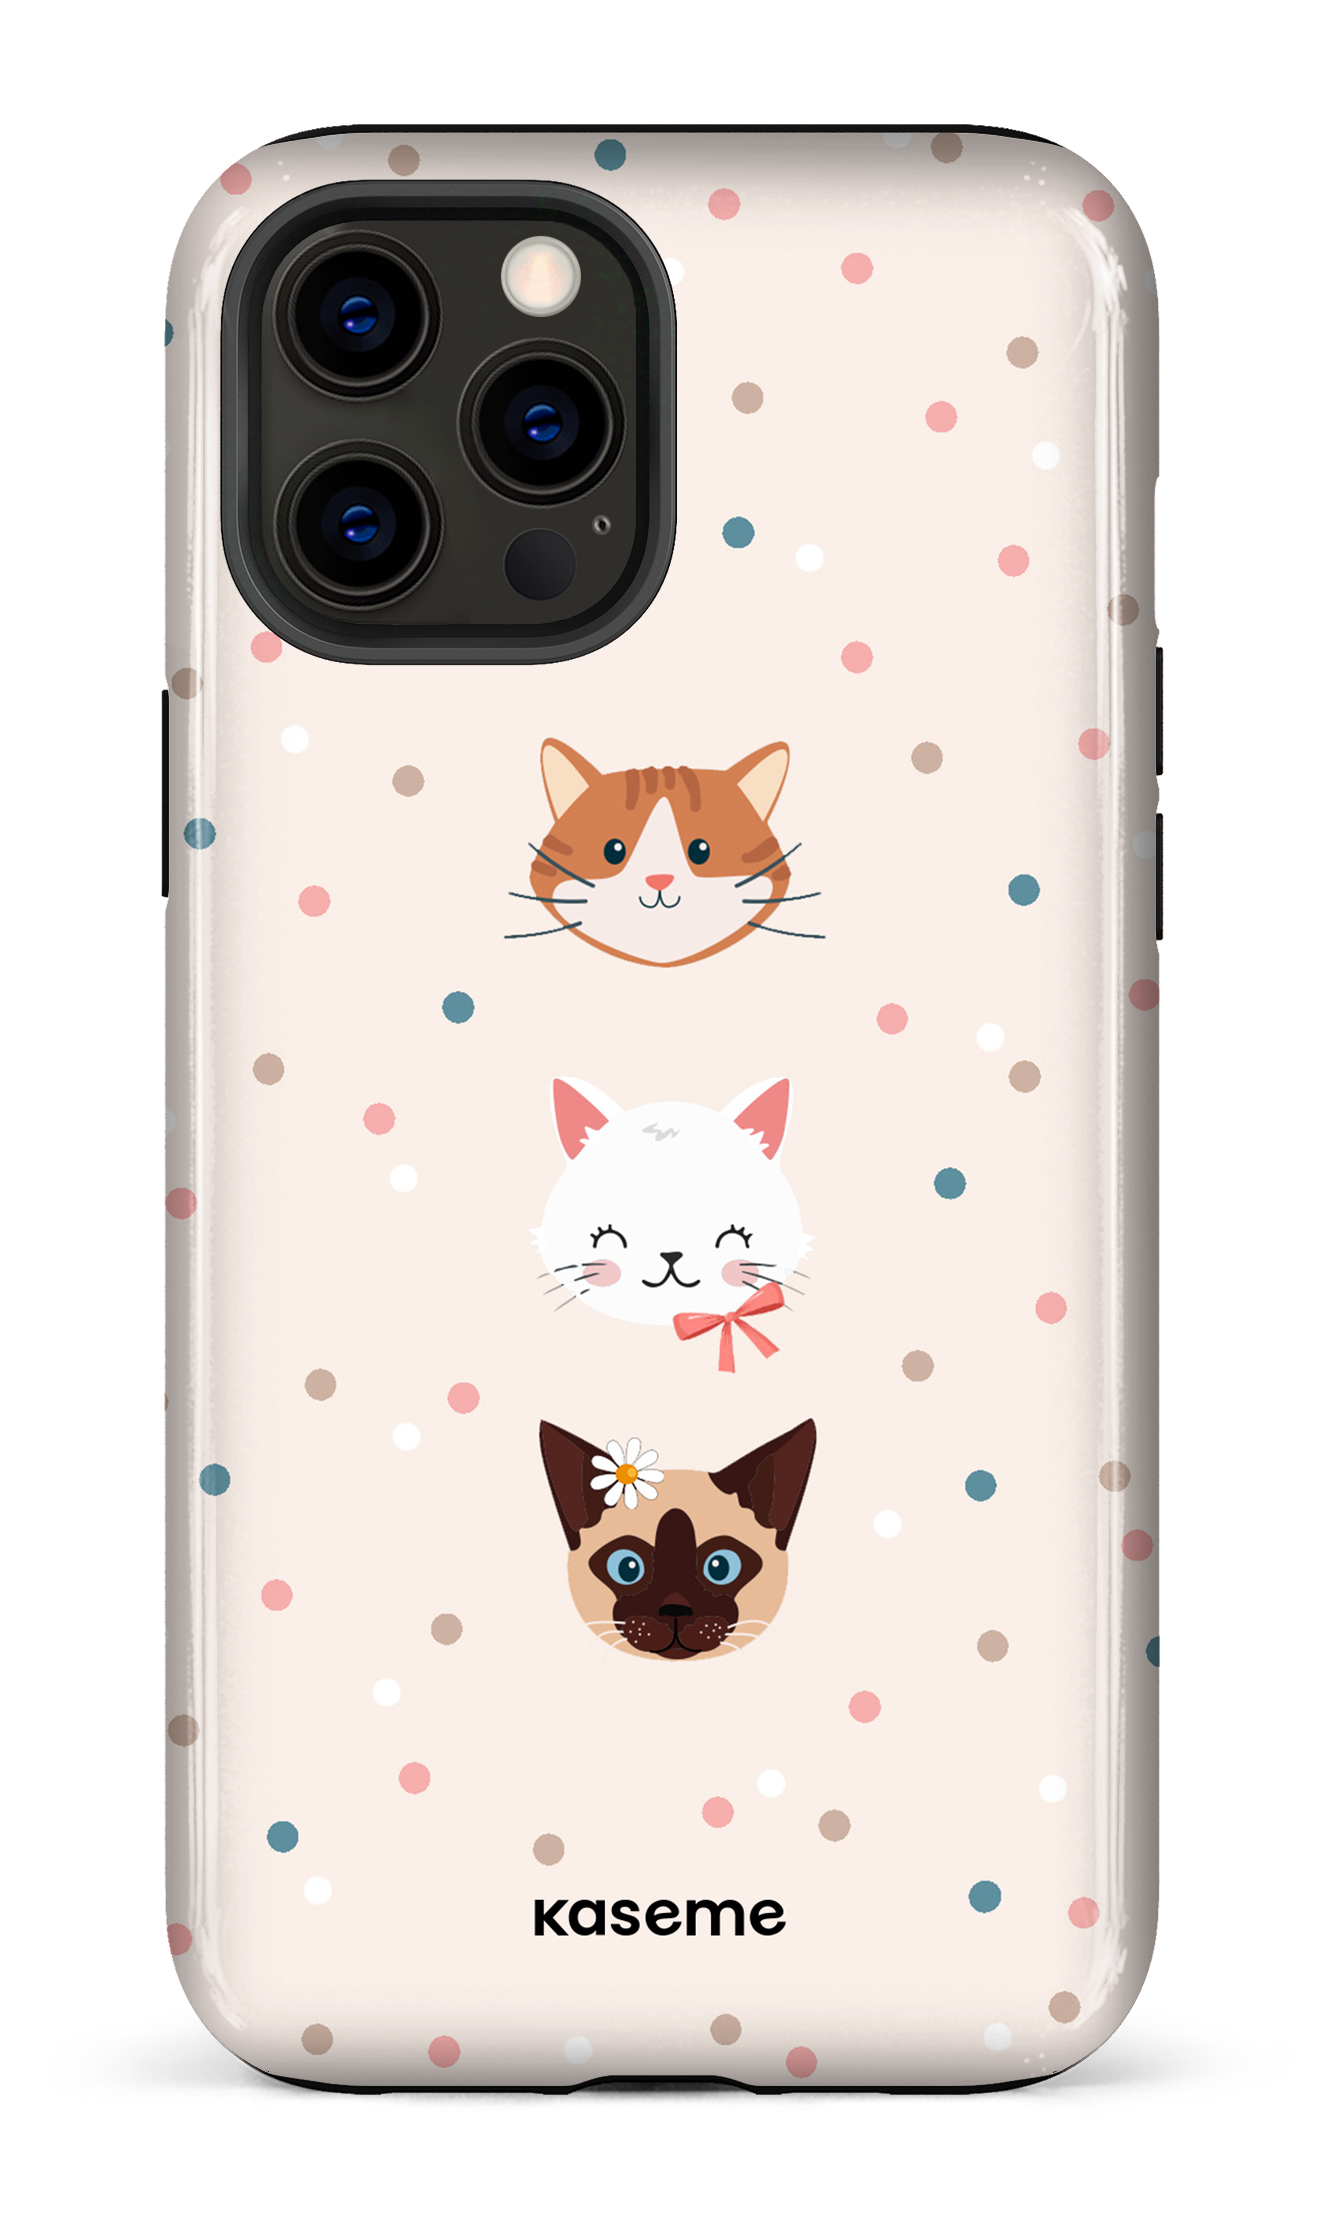 Cat lover - iPhone 12 Pro Max